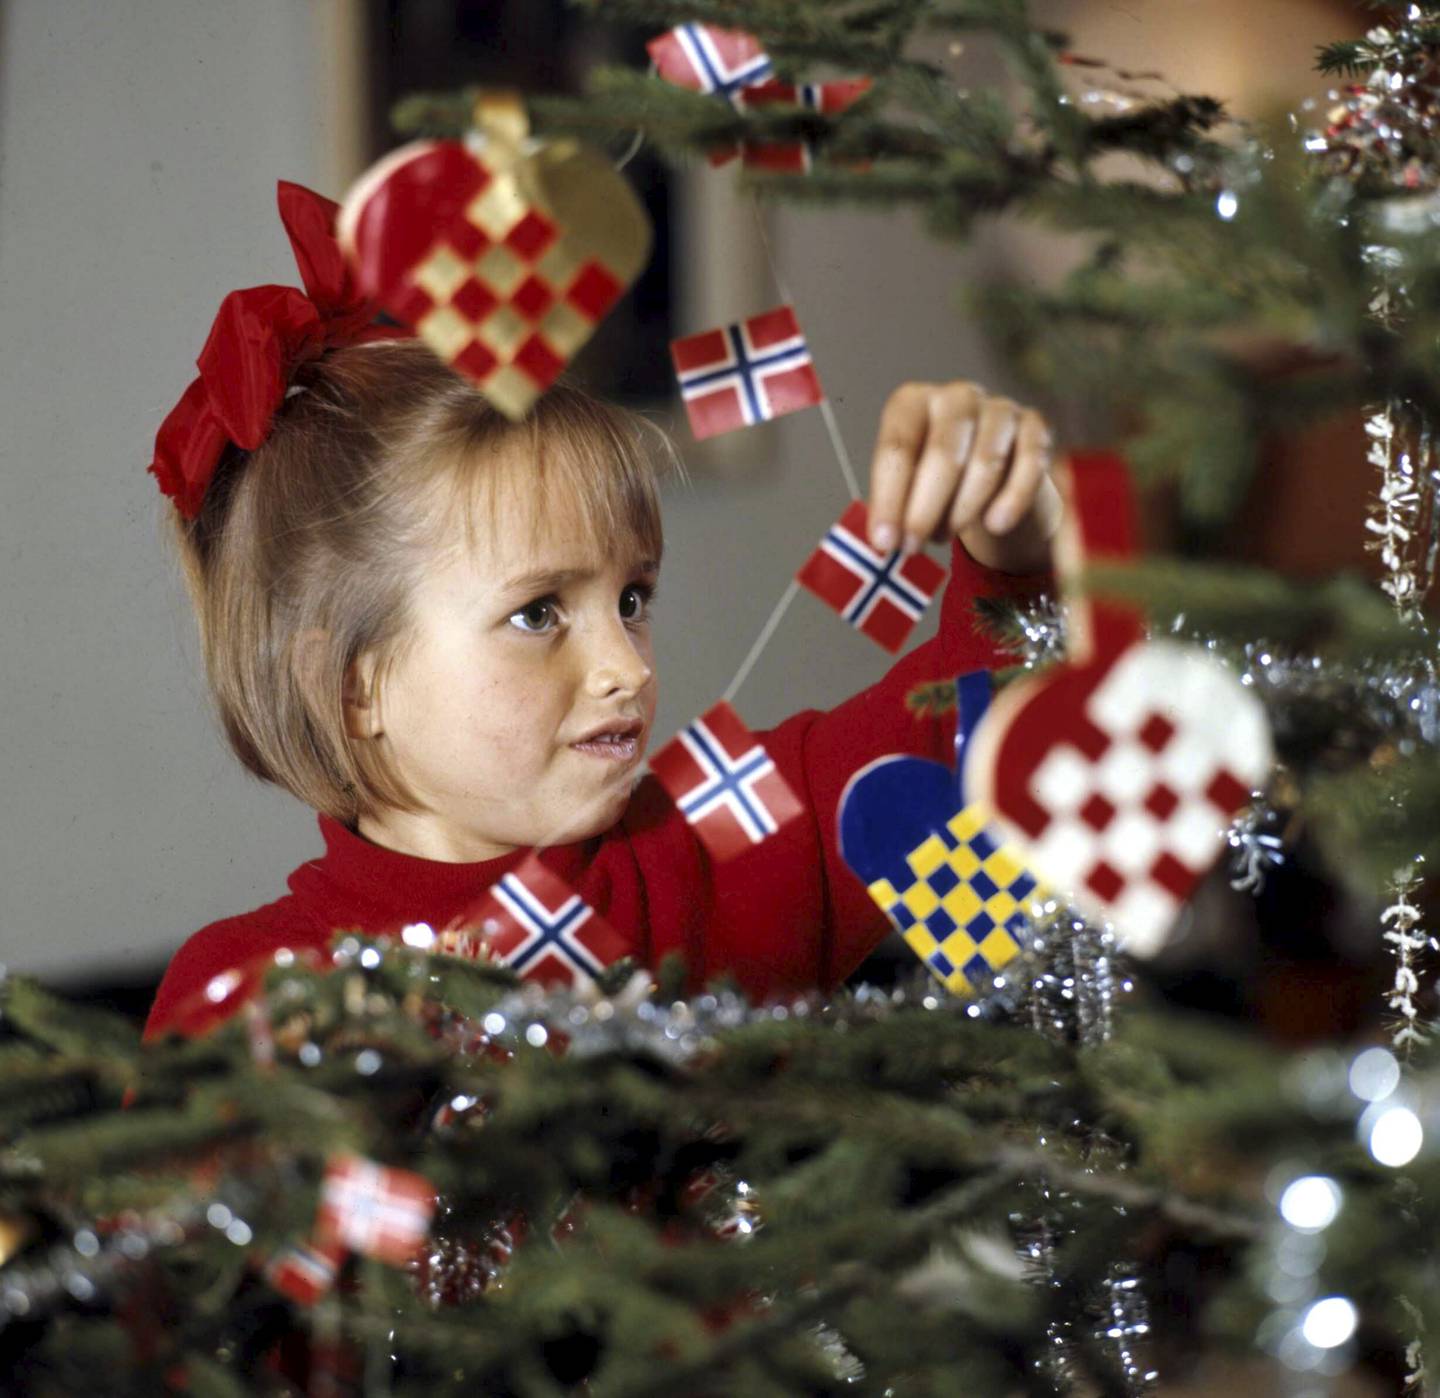  I 1970 var det hjemmeflettede kurver og norske flagg som gjaldt da denne jenta pyntet treet. I dag velger flere en mer moderne stil på juletreet. 